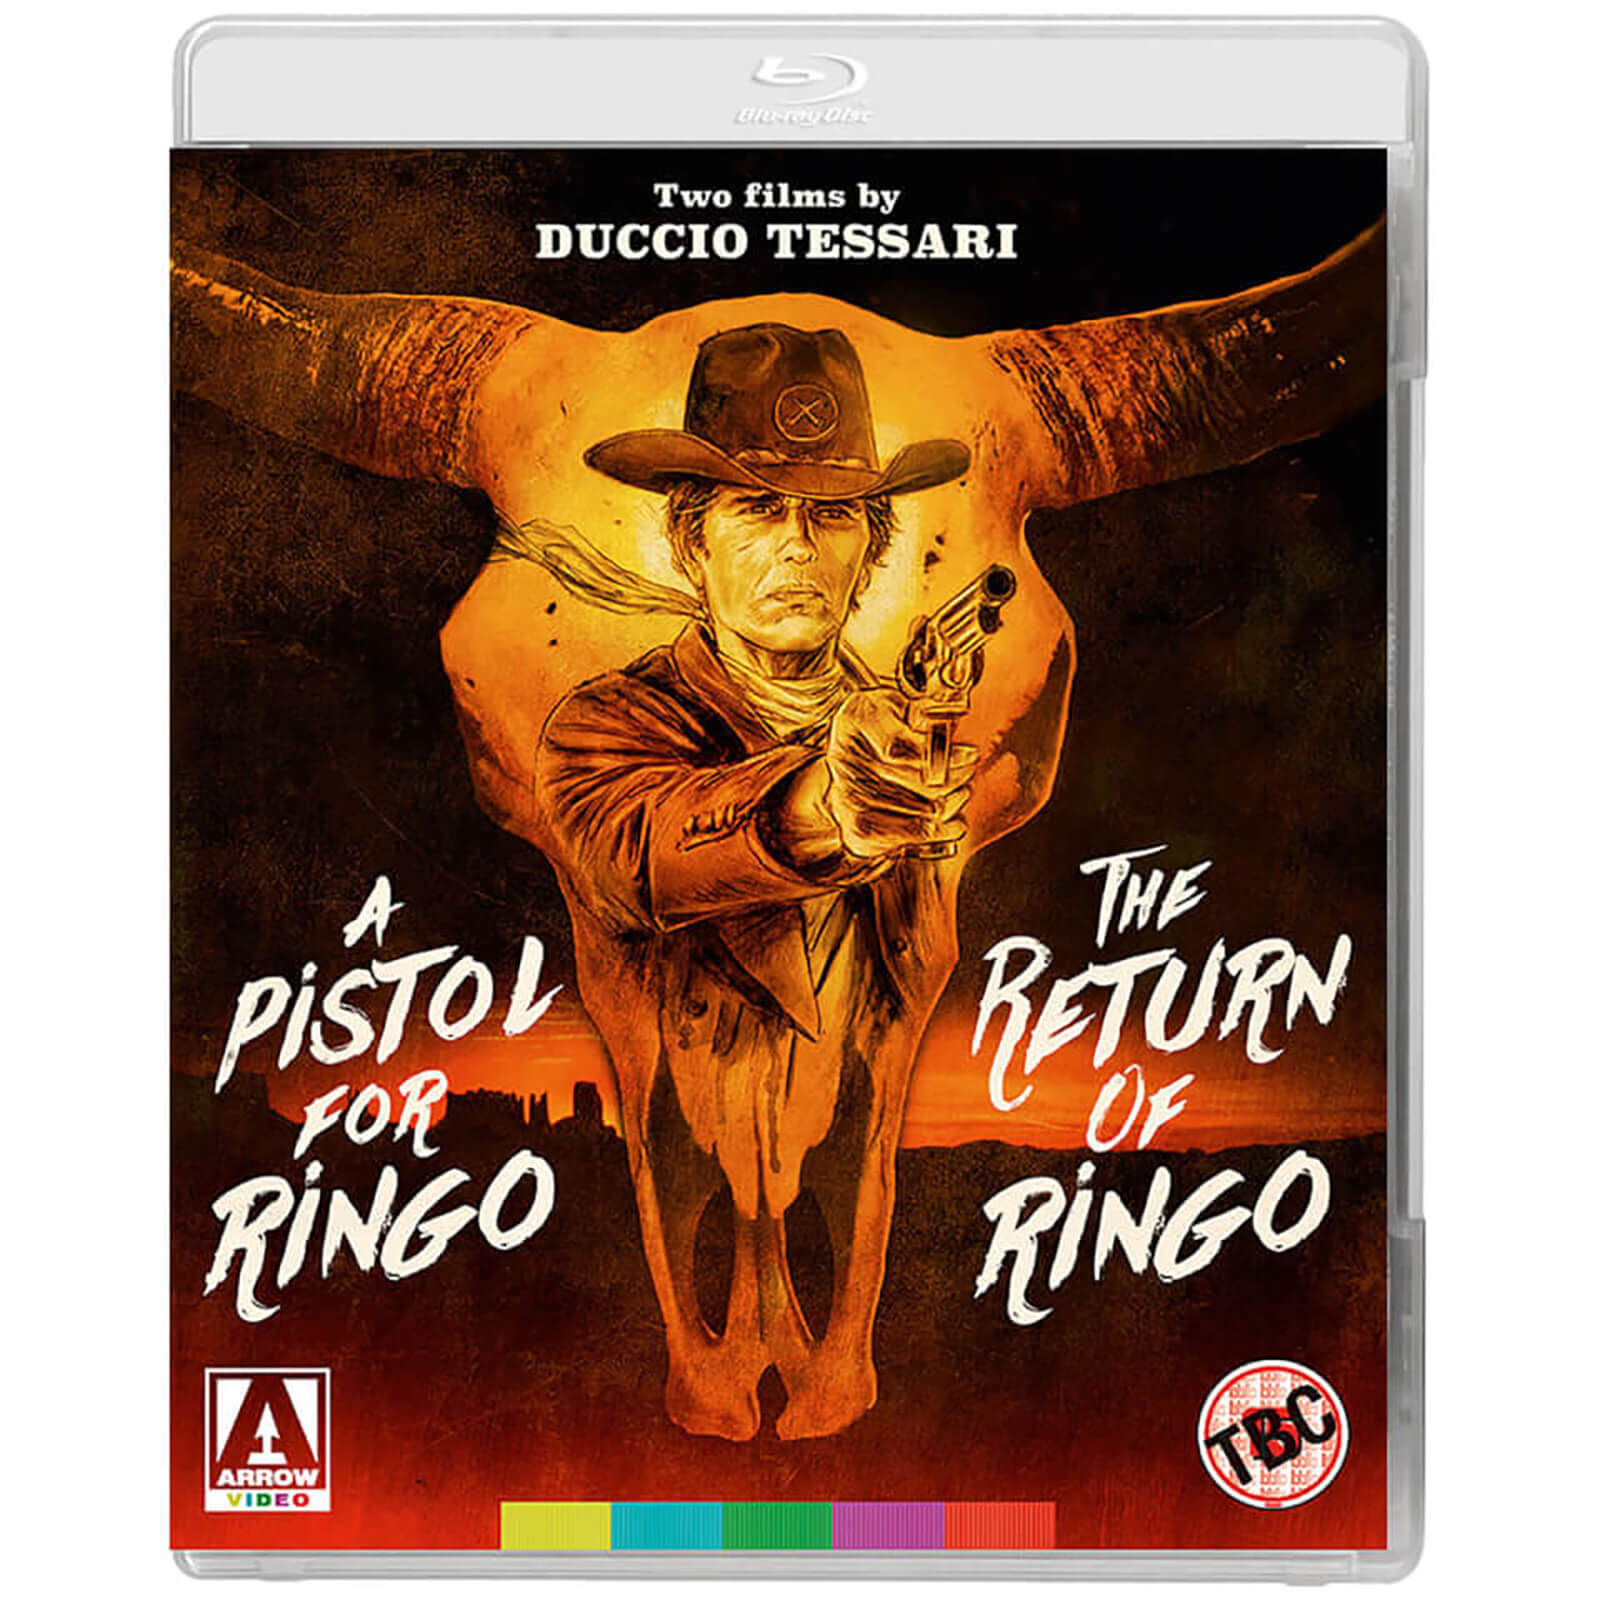 Eine Pistole für Ringo & Die Rückkehr von Ringo: Zwei Filme von Duccio Tessari von Arrow Video